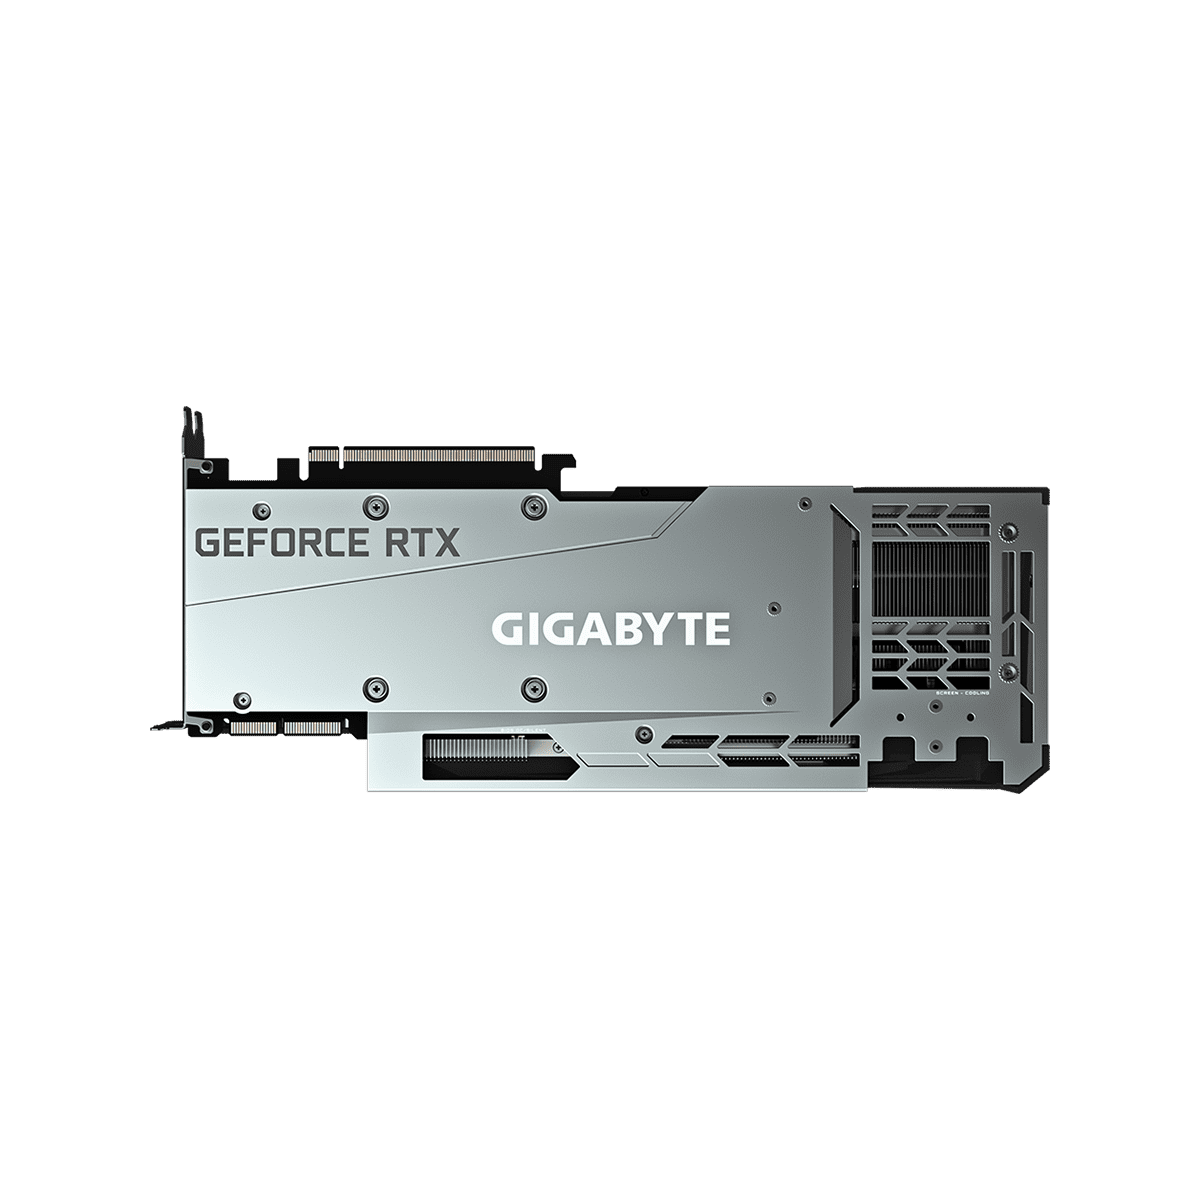 GV-N3090GAMING OC-24GD | GIGABYTE NVIDIA GEFORCE RTX 3090 搭載 